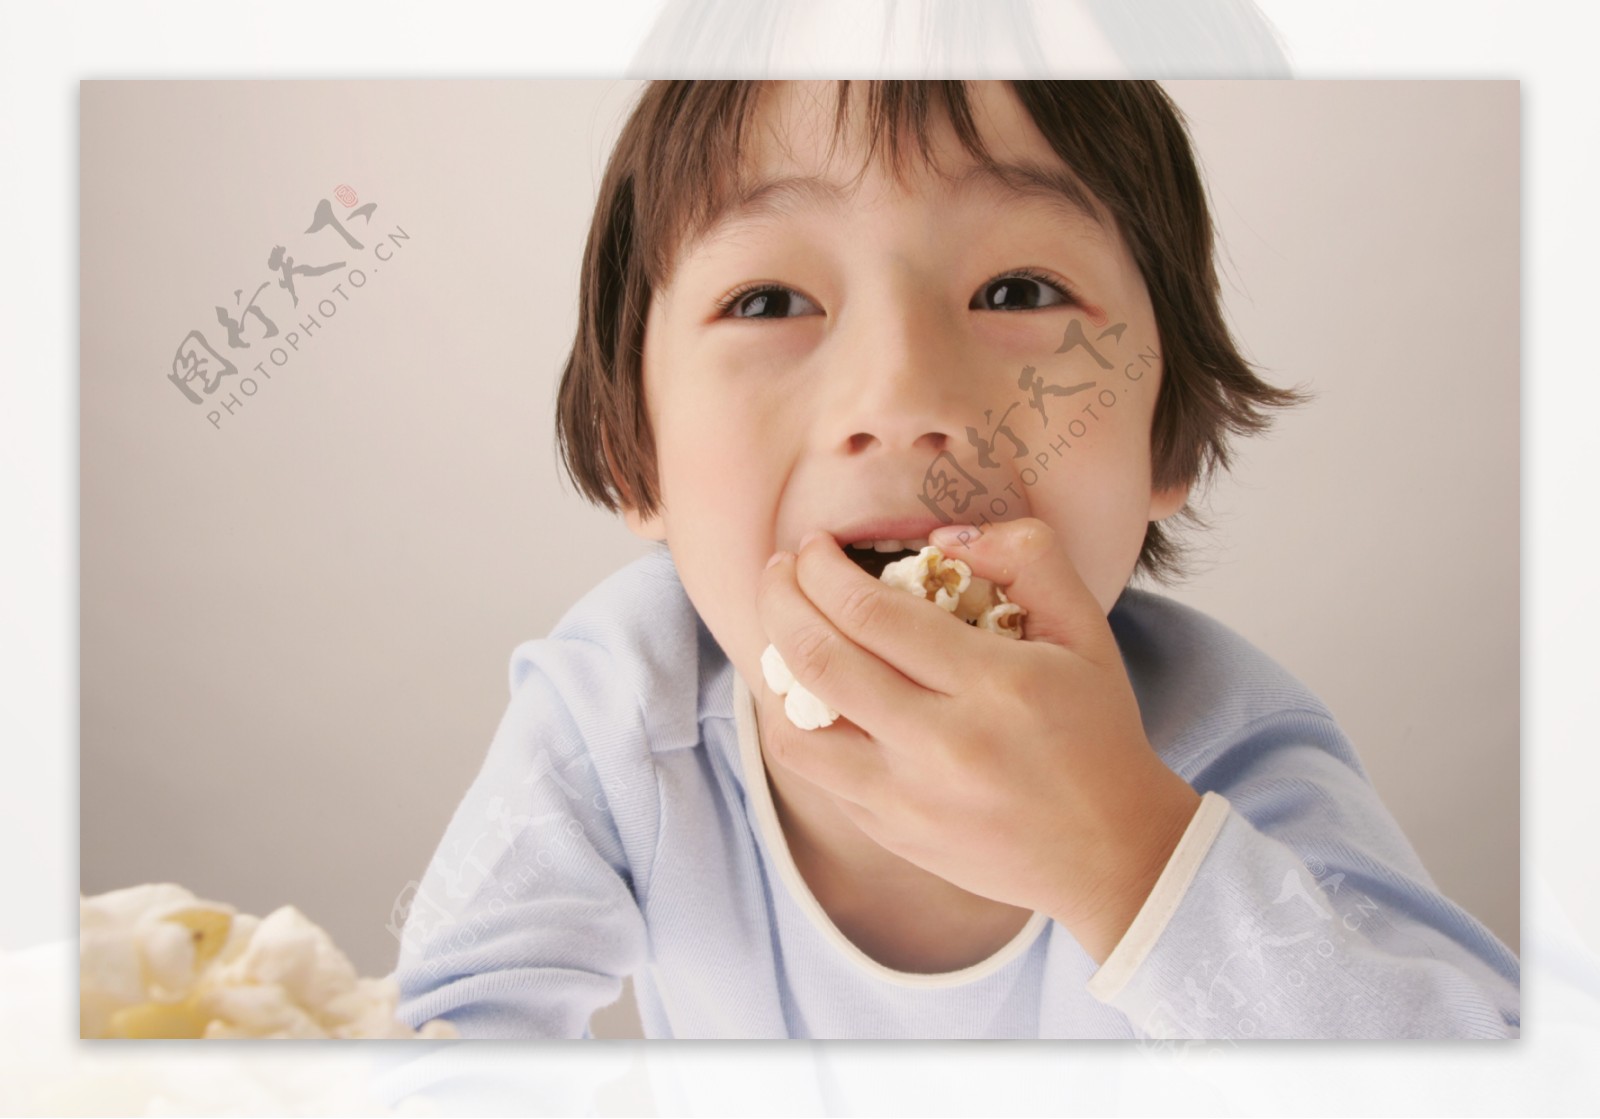 吃爆米花的儿童图片